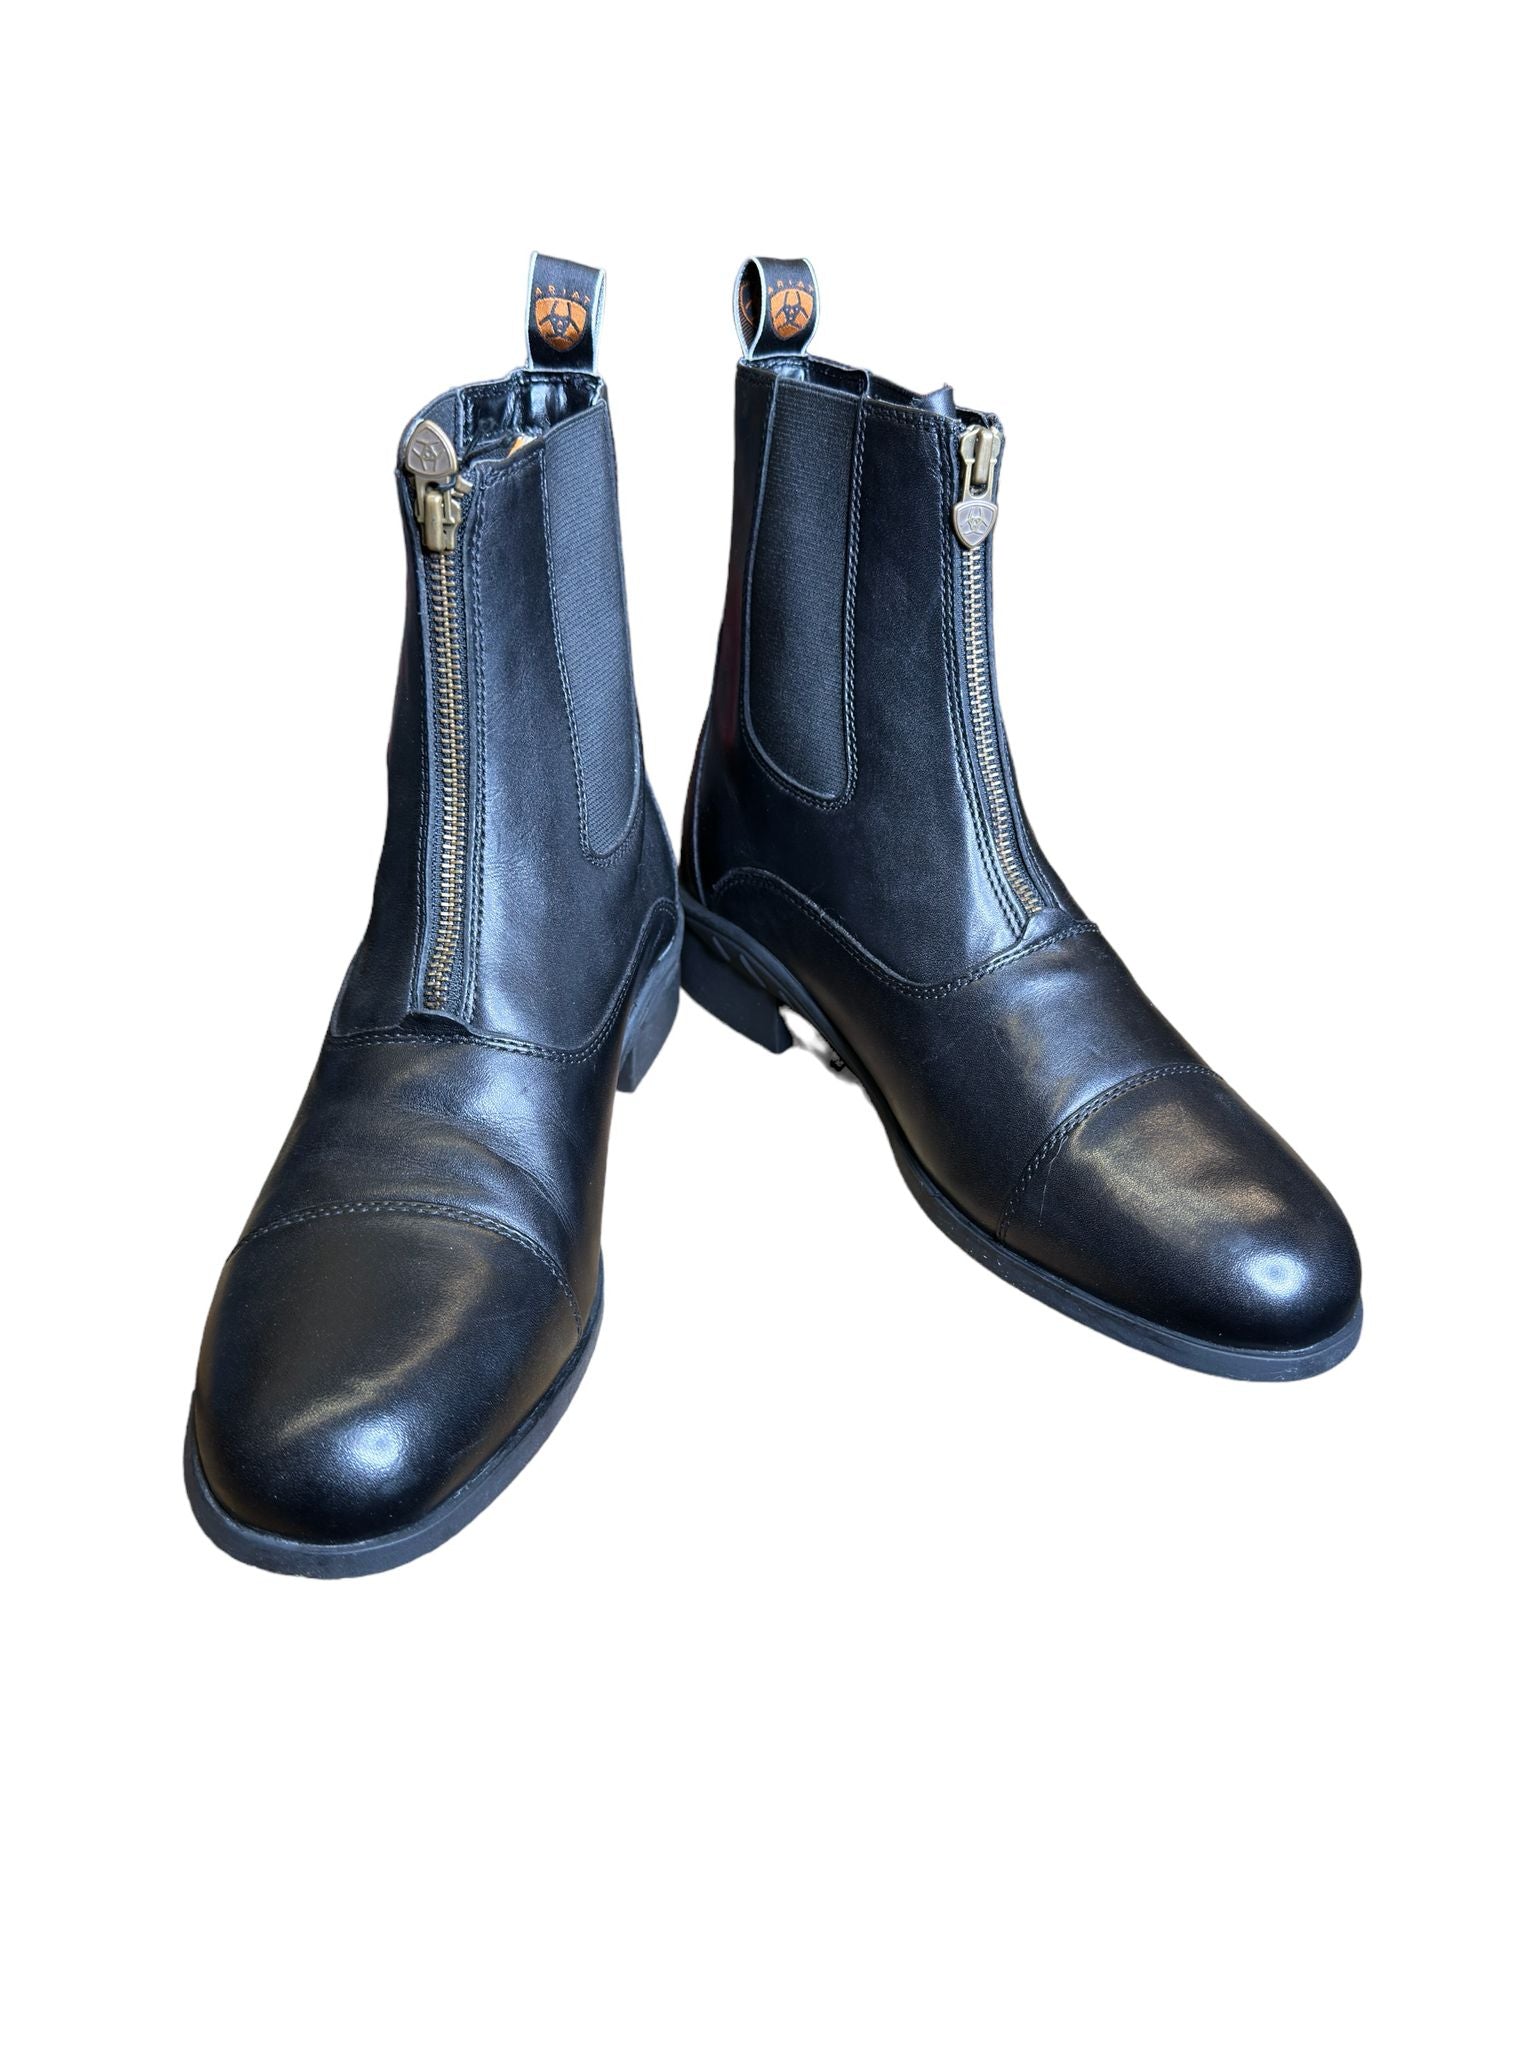 Ariat Men's Heritage II Zip Paddock Boot